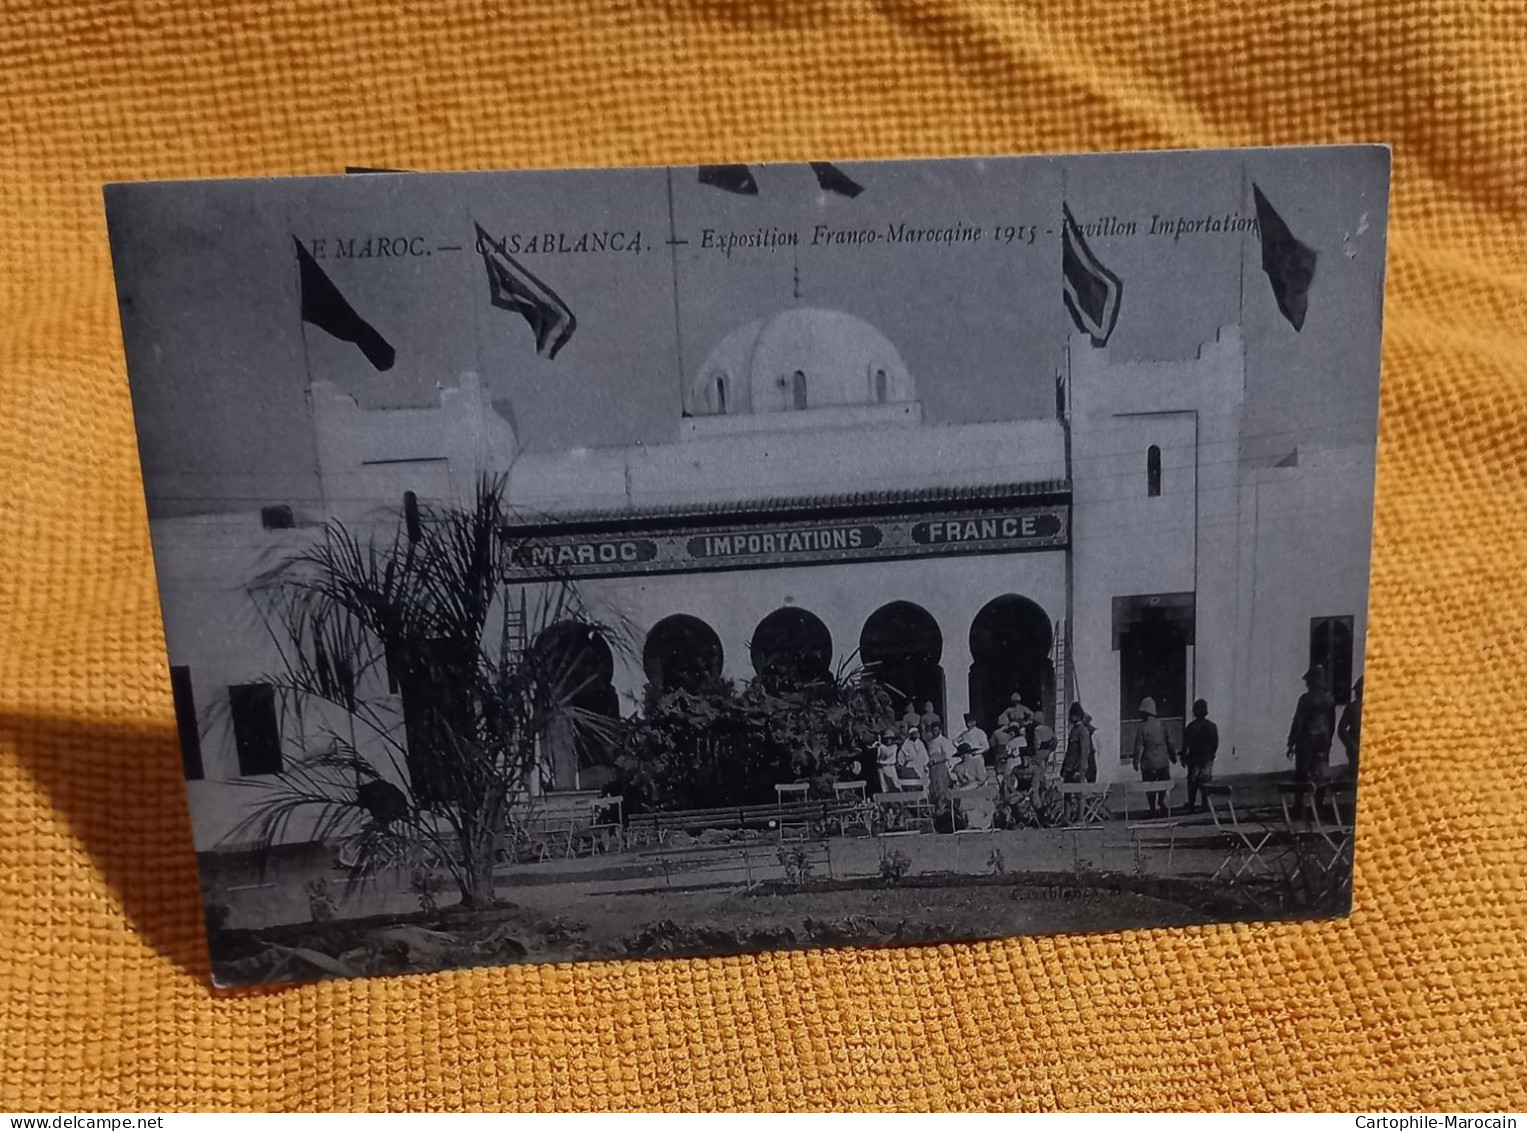 *A17*- Cp20 - CASABLANCA : Exposition Franco-Marocaine 1915 - Pavillon Importation - RARE CLICHÉ - - Casablanca